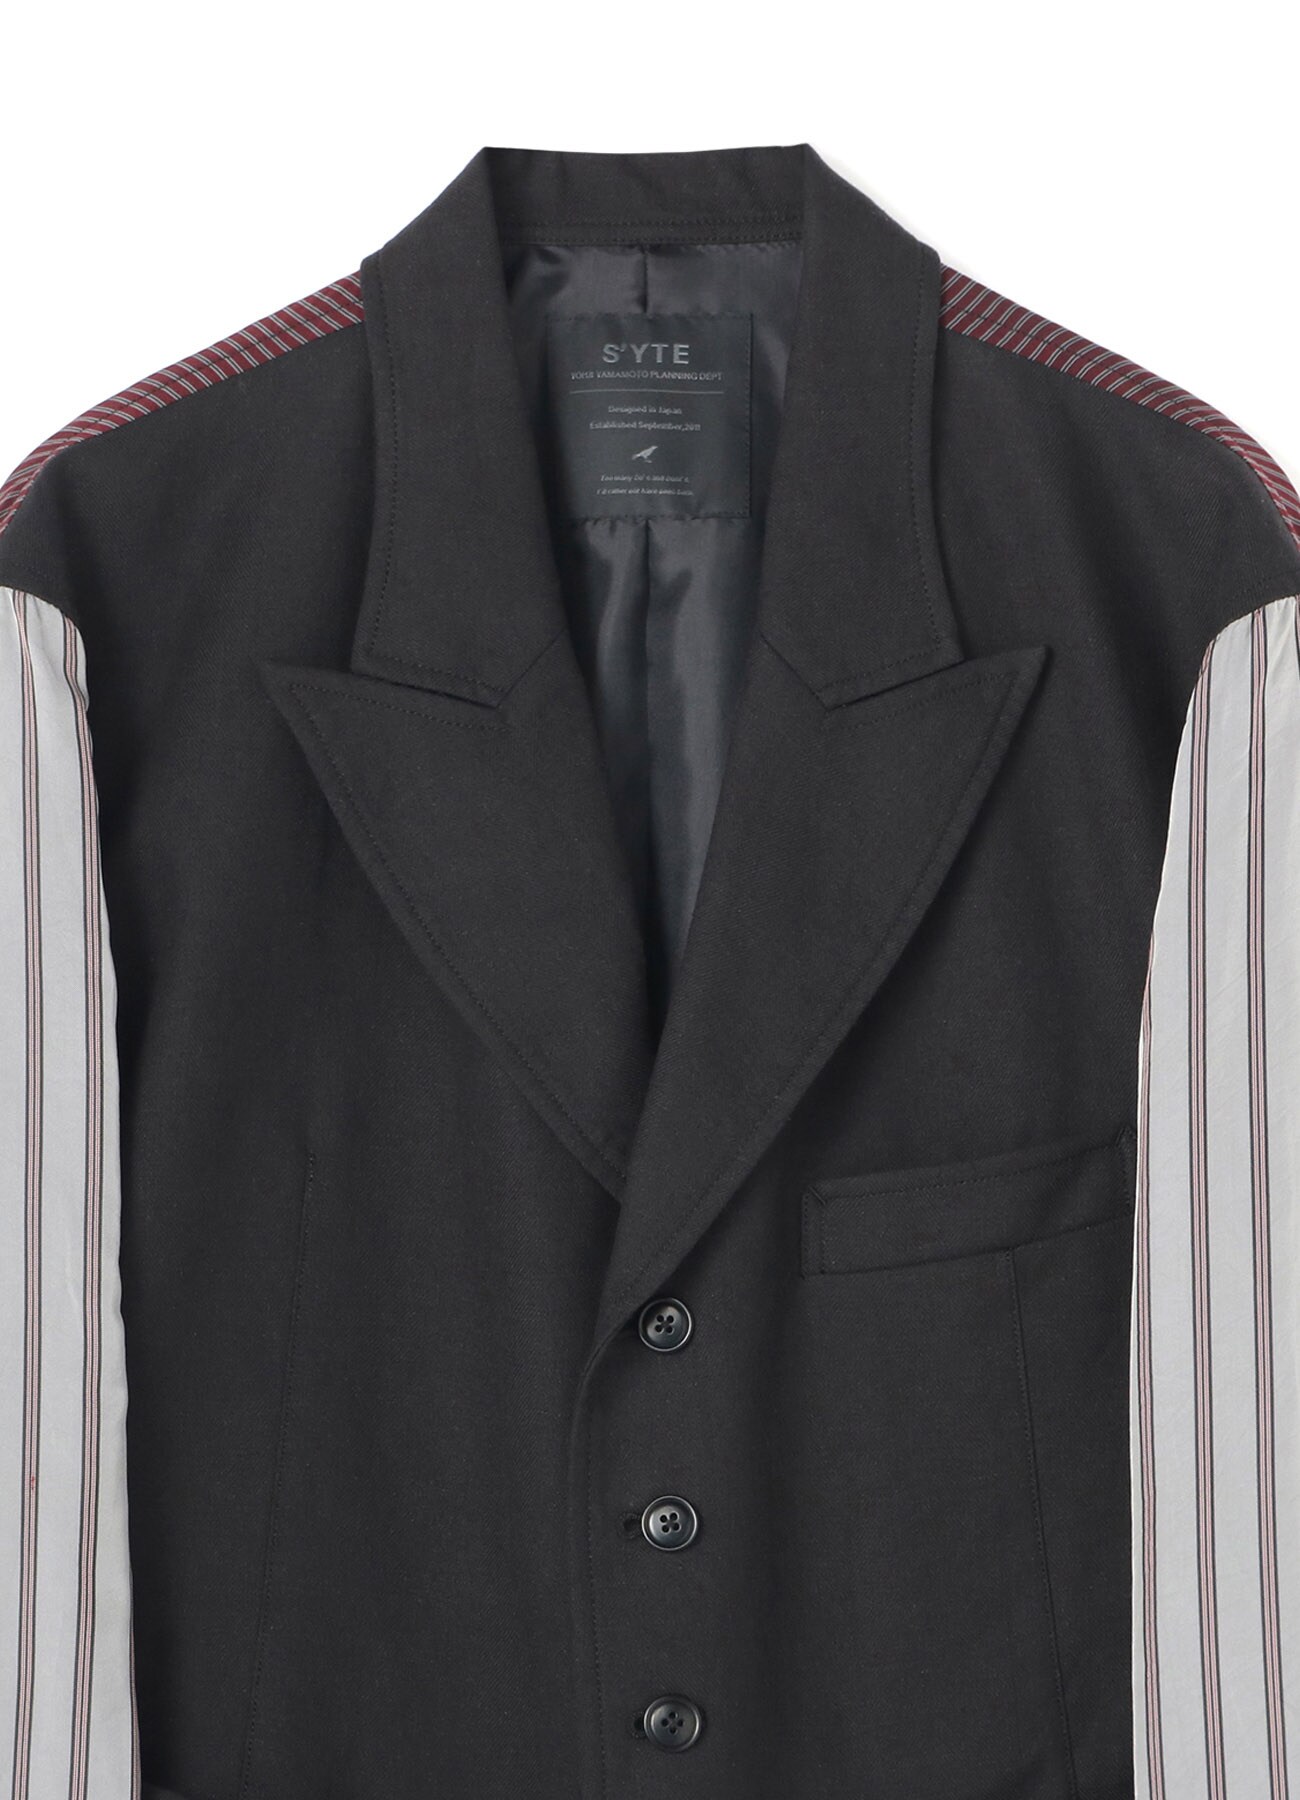 Li/C Washer Twill Inside Out 6BS Peak Jacket Vest